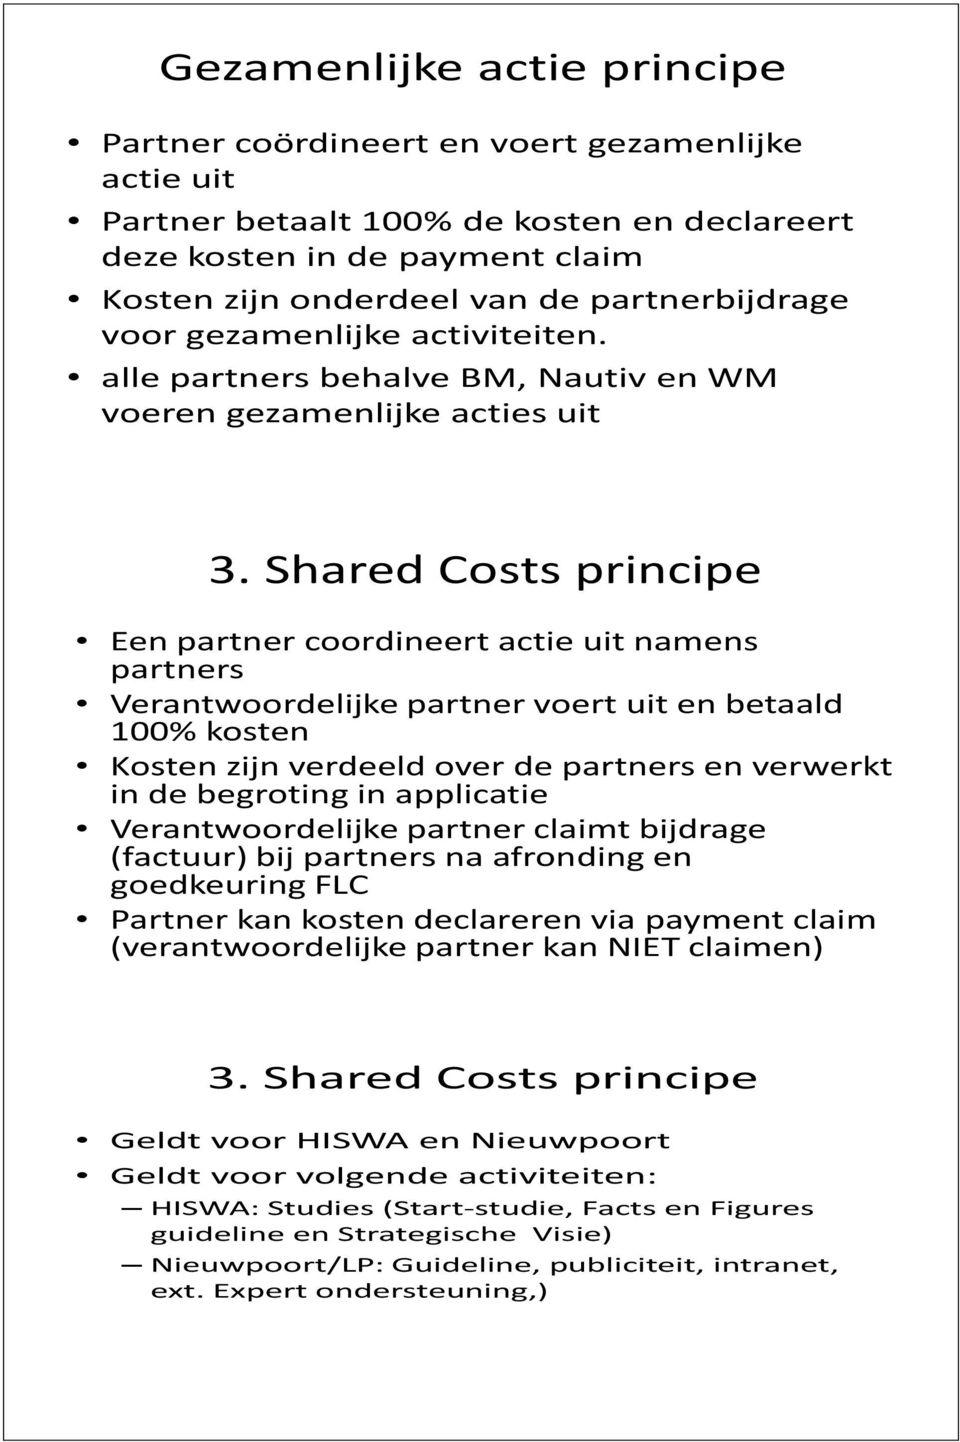 Shared Costs principe Een partner coordineert actie uit namens partners Verantwoordelijke partner voert uit en betaald 100% kosten Kosten zijn verdeeld over de partners en verwerkt in de begroting in